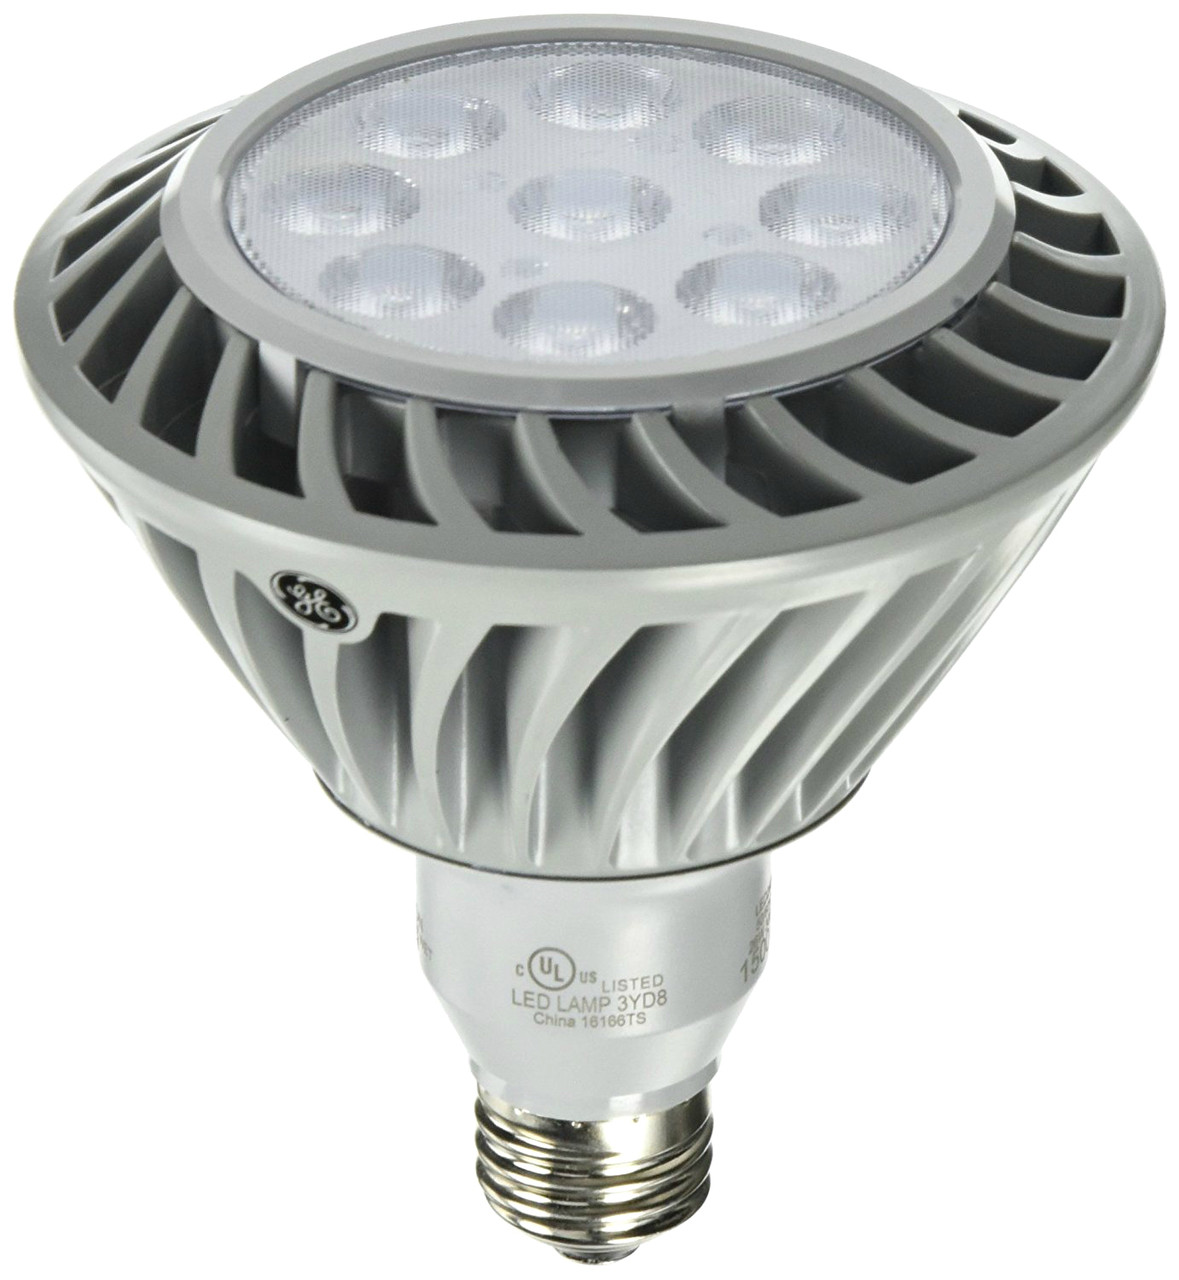 Haalbaar Somber Tegenover GE LED26DP38S830/25 Par38 26 Watt LED Lamp | Provision Lamp